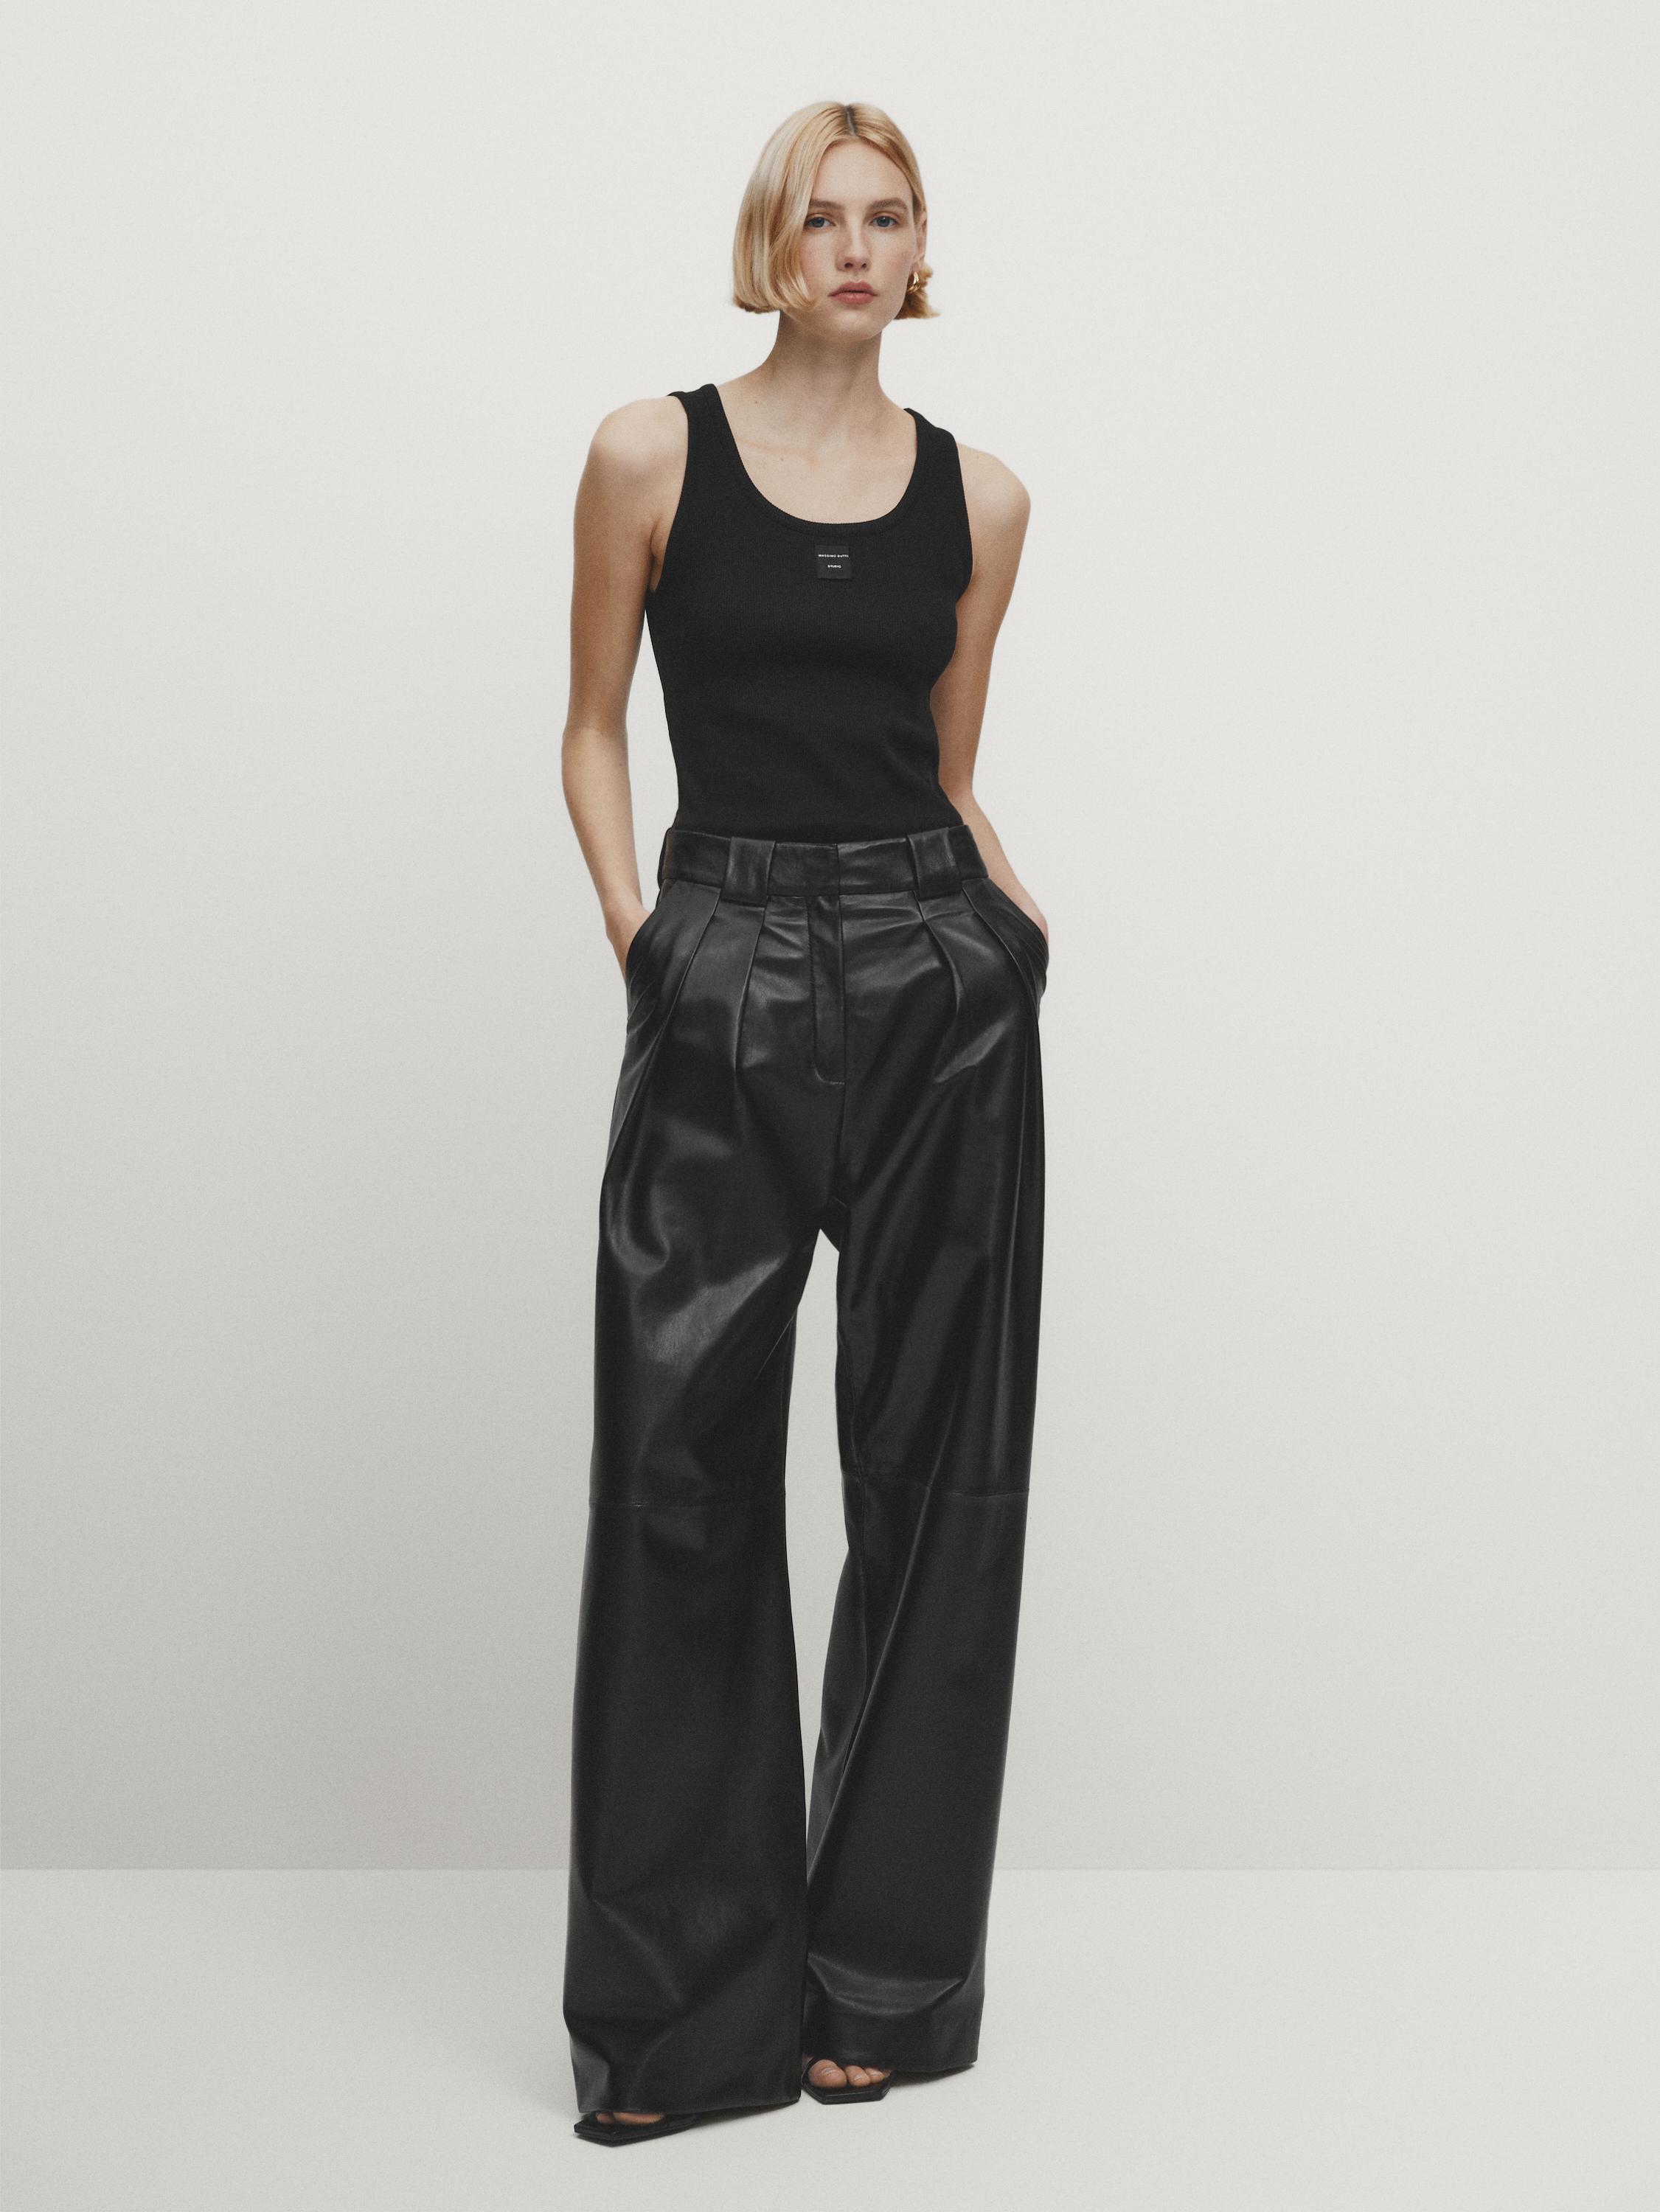 Pantalones Cuero de Mujer, Nueva Colección Online